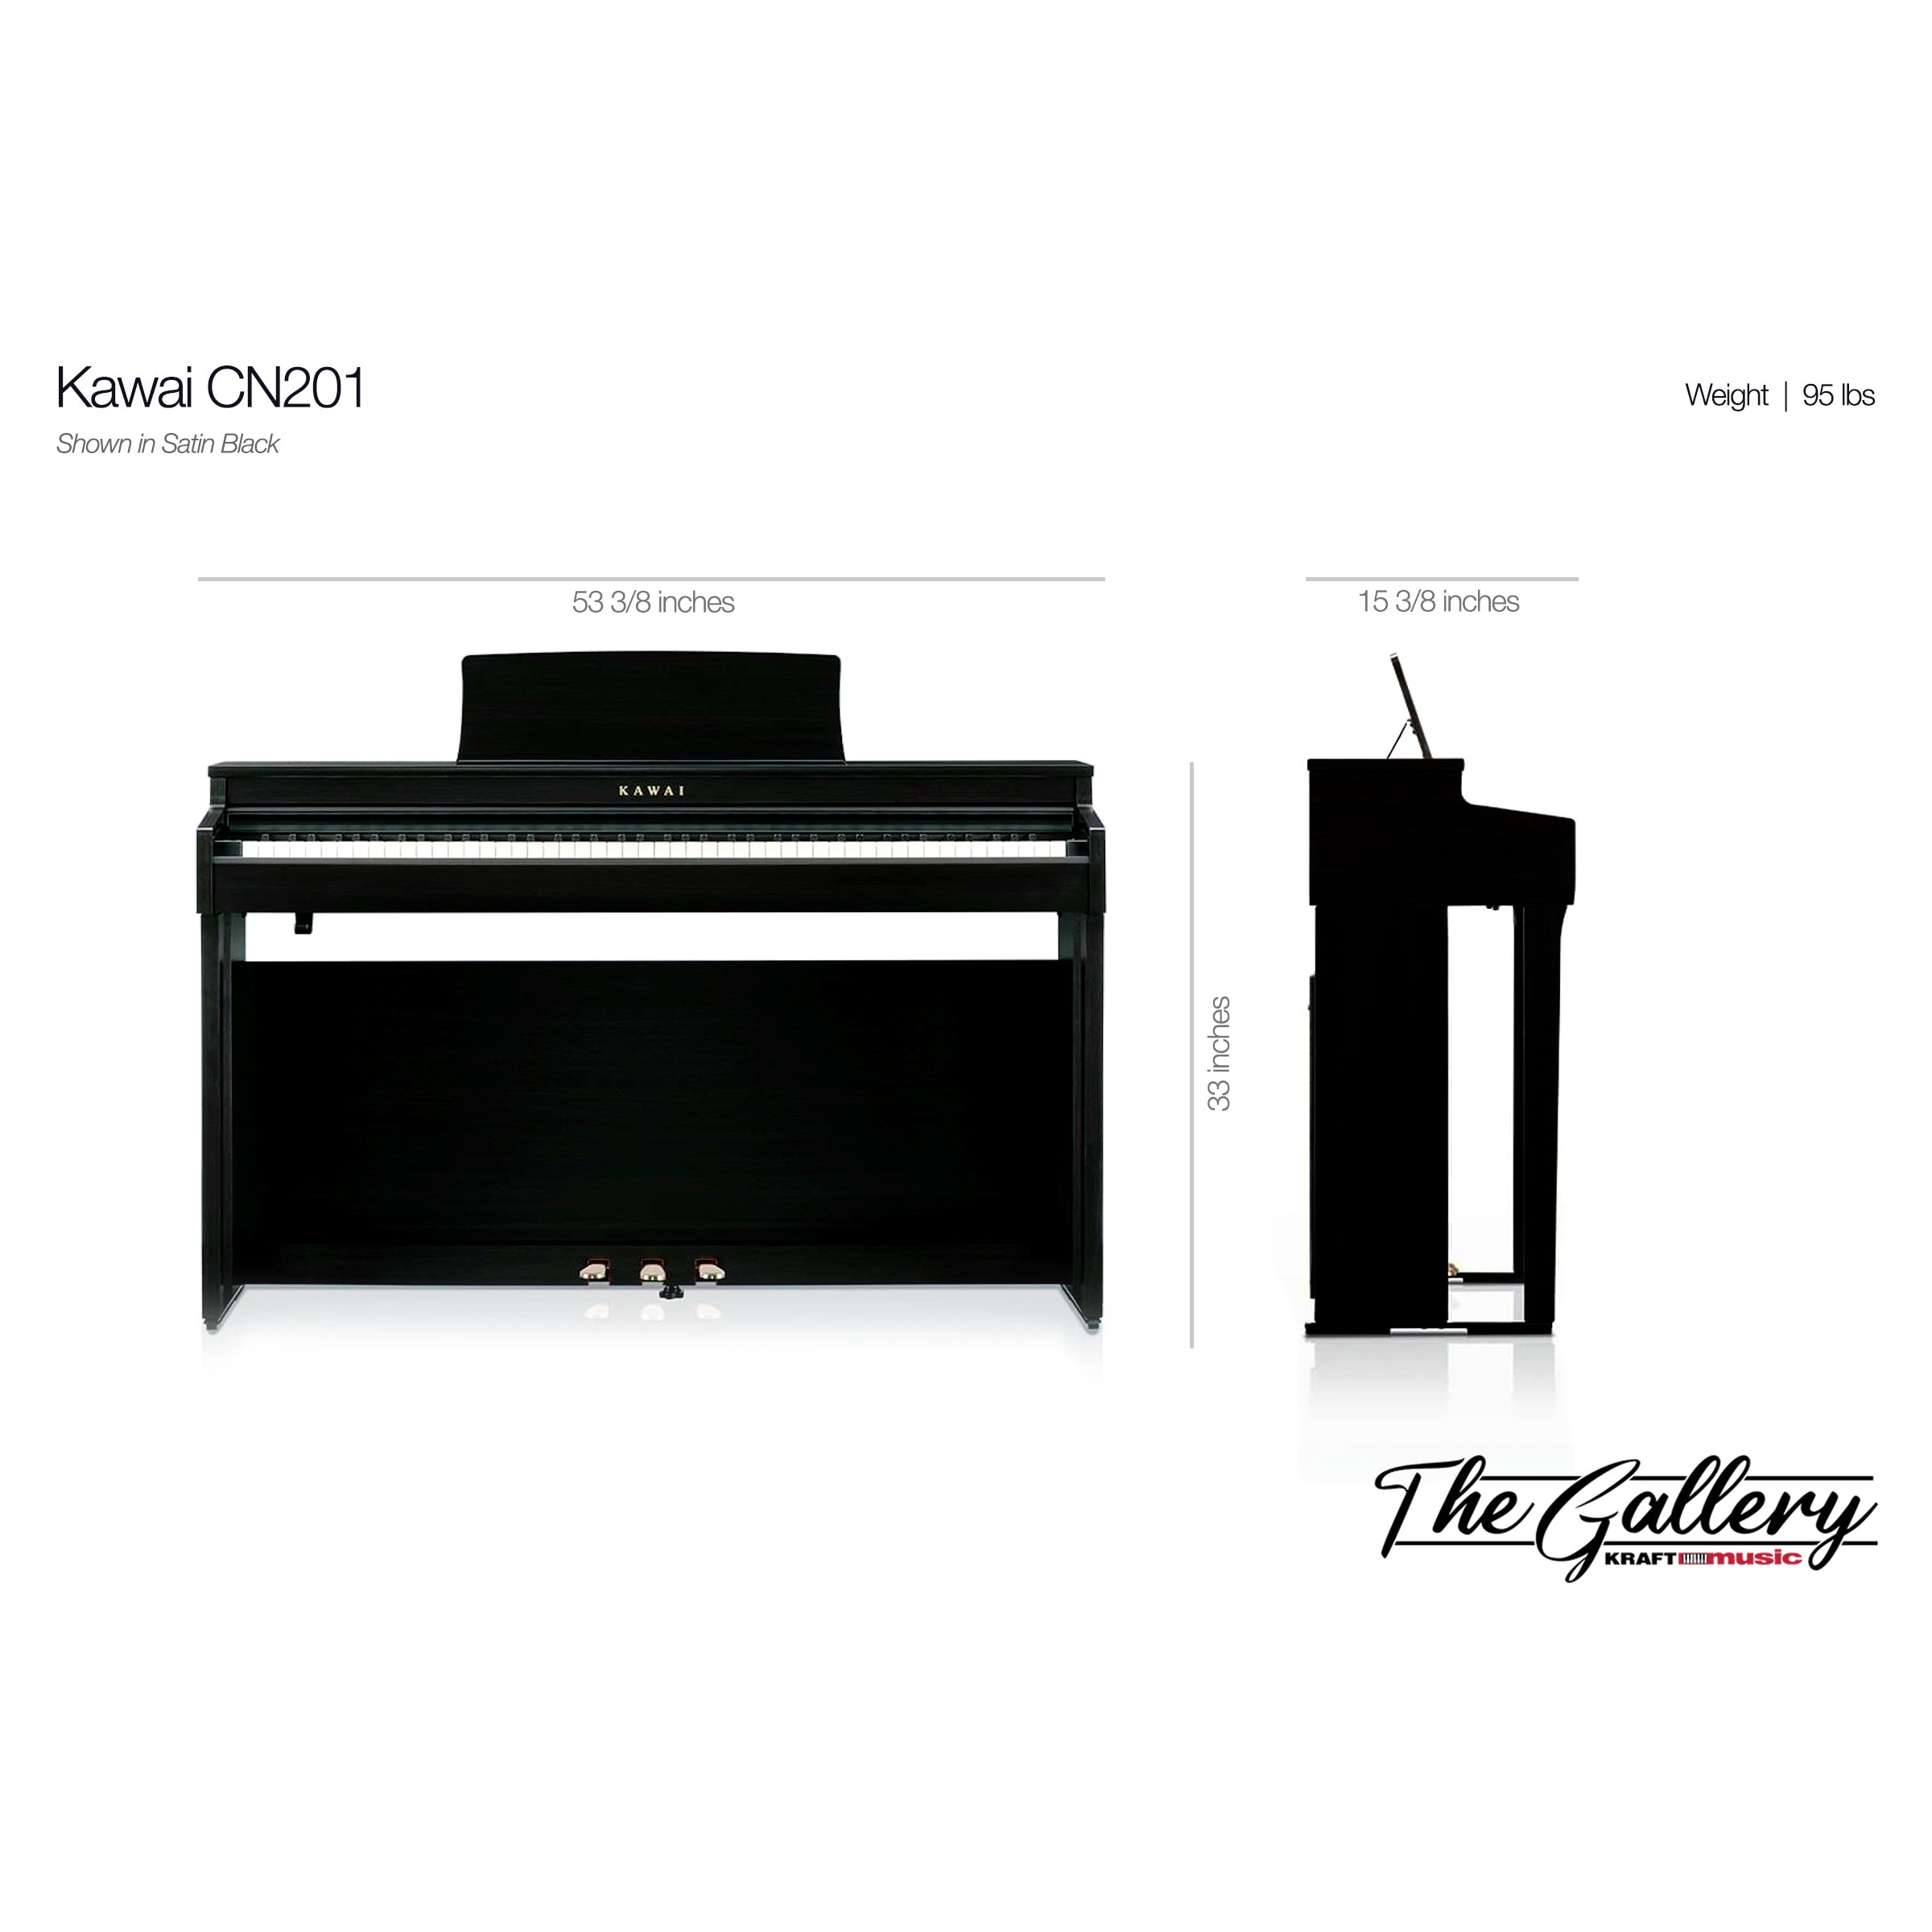 Kawai CN201 Digital Piano - Dimensions 